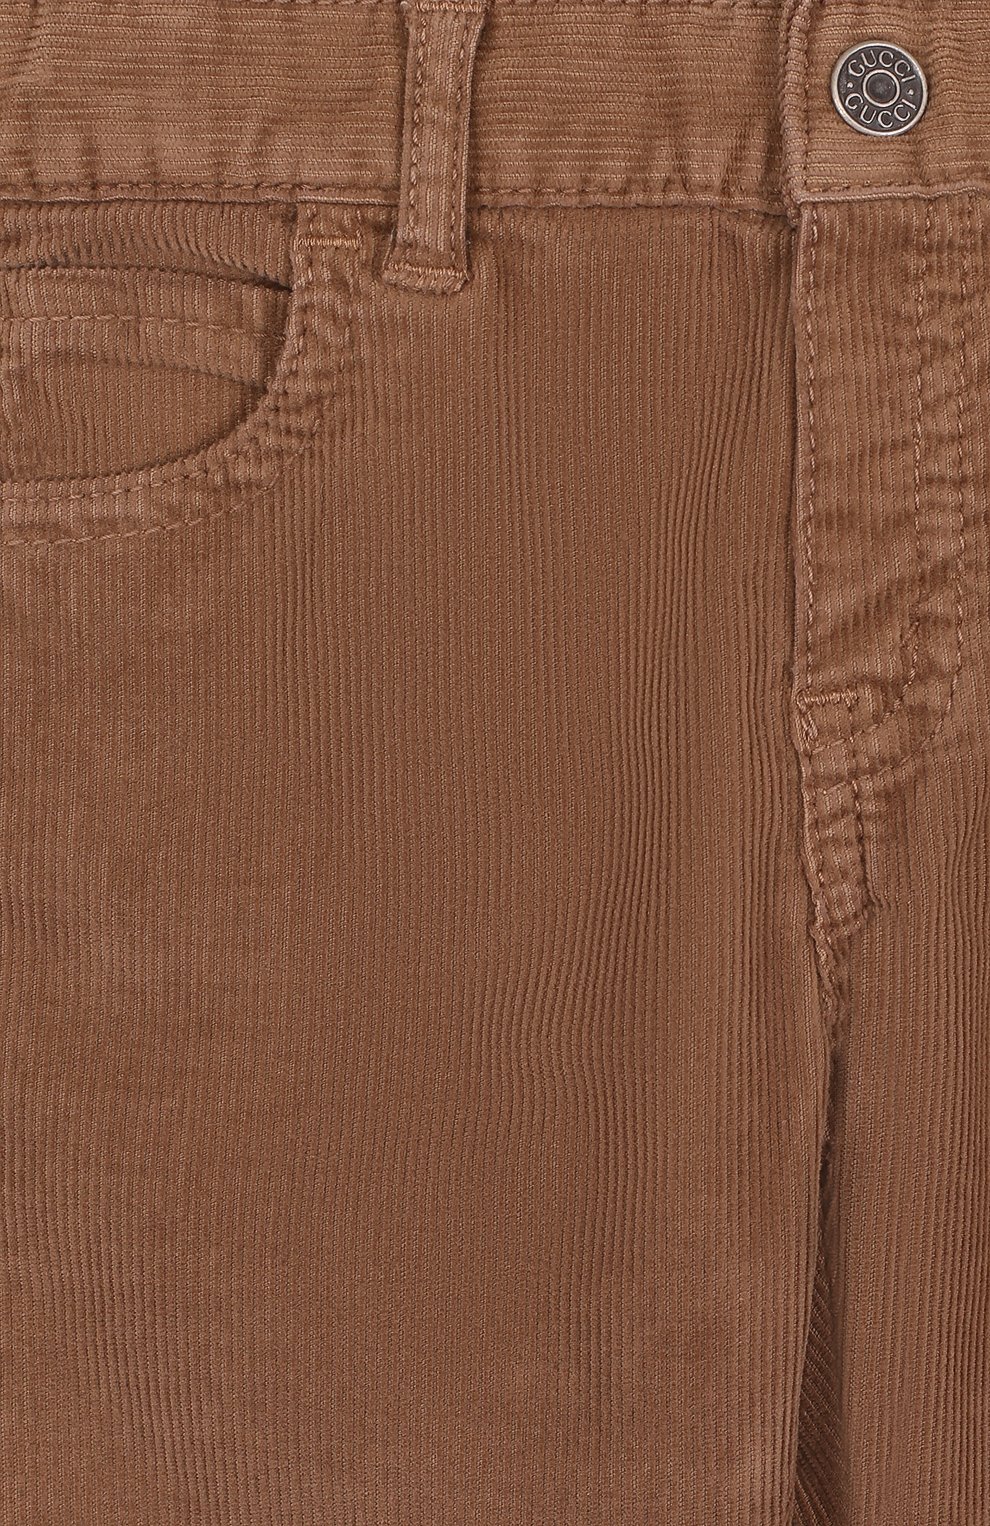 Детские вельветовые брюки GUCCI бежевого цвета, арт. 522146/XBE48 | Фото 3 (Материал внешний: Хлопок; Статус проверки: Проверена категория)